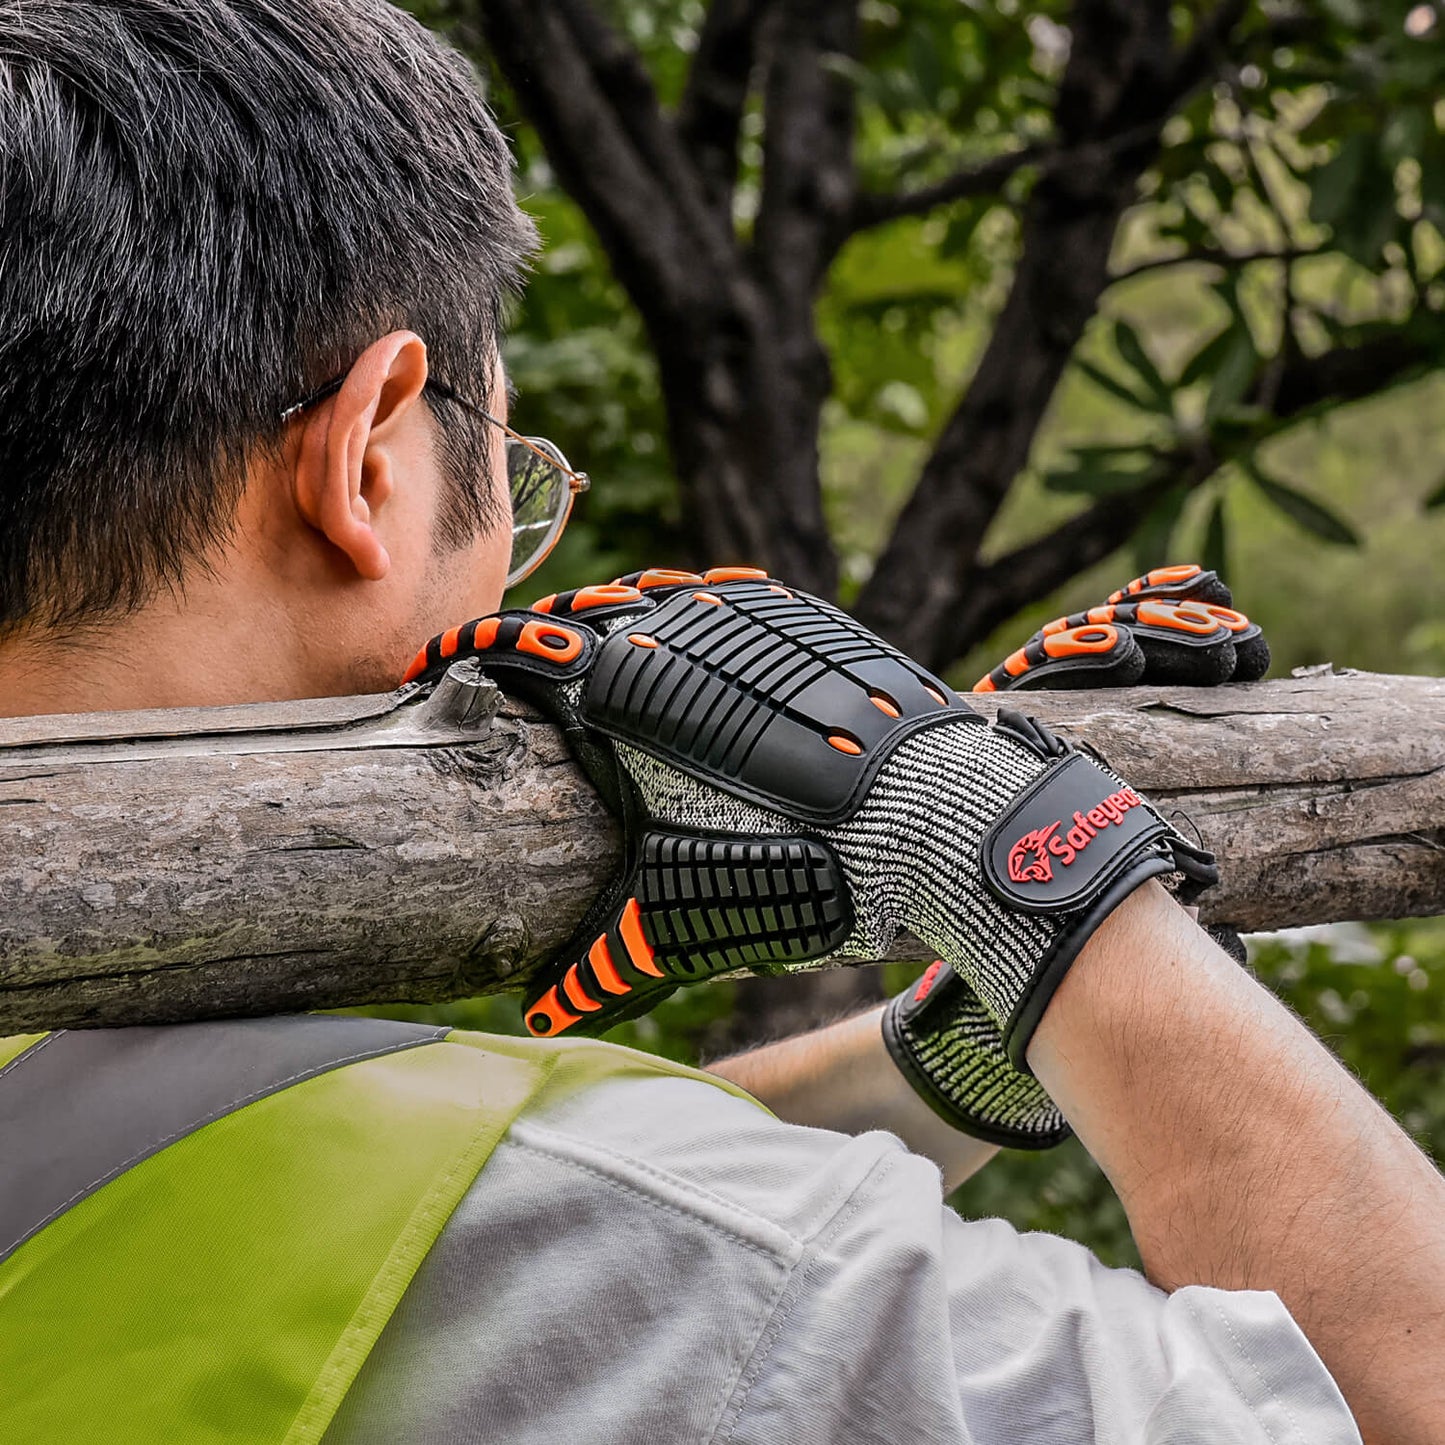 SAFEYEAR Cut Resistant Mechanic Work Gloves FL-HDPAOR